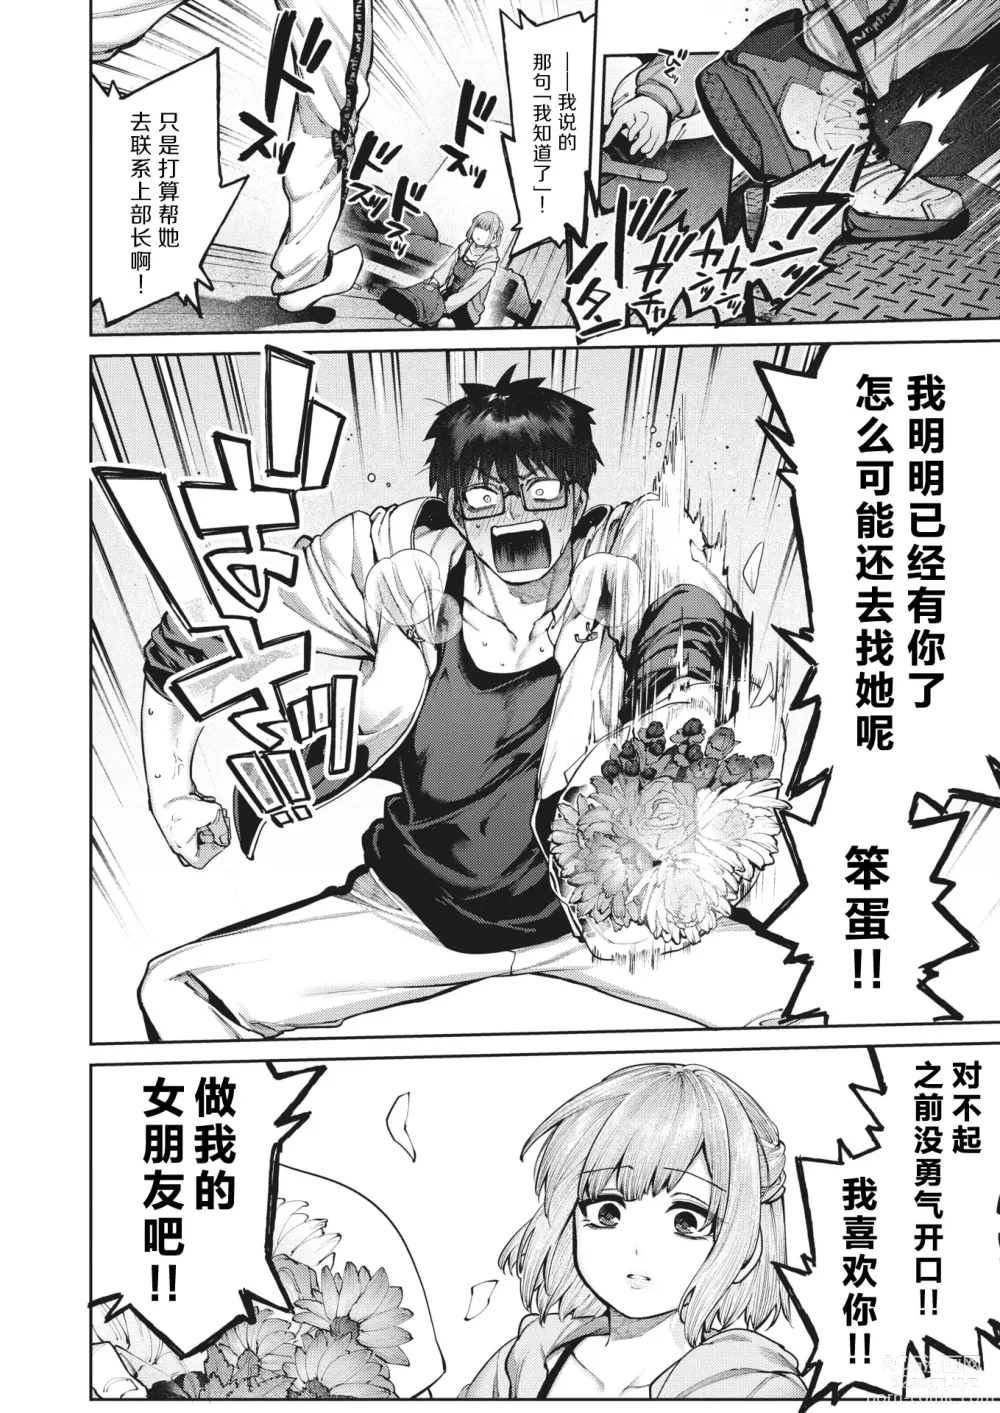 Page 19 of manga 垫脚石之恋